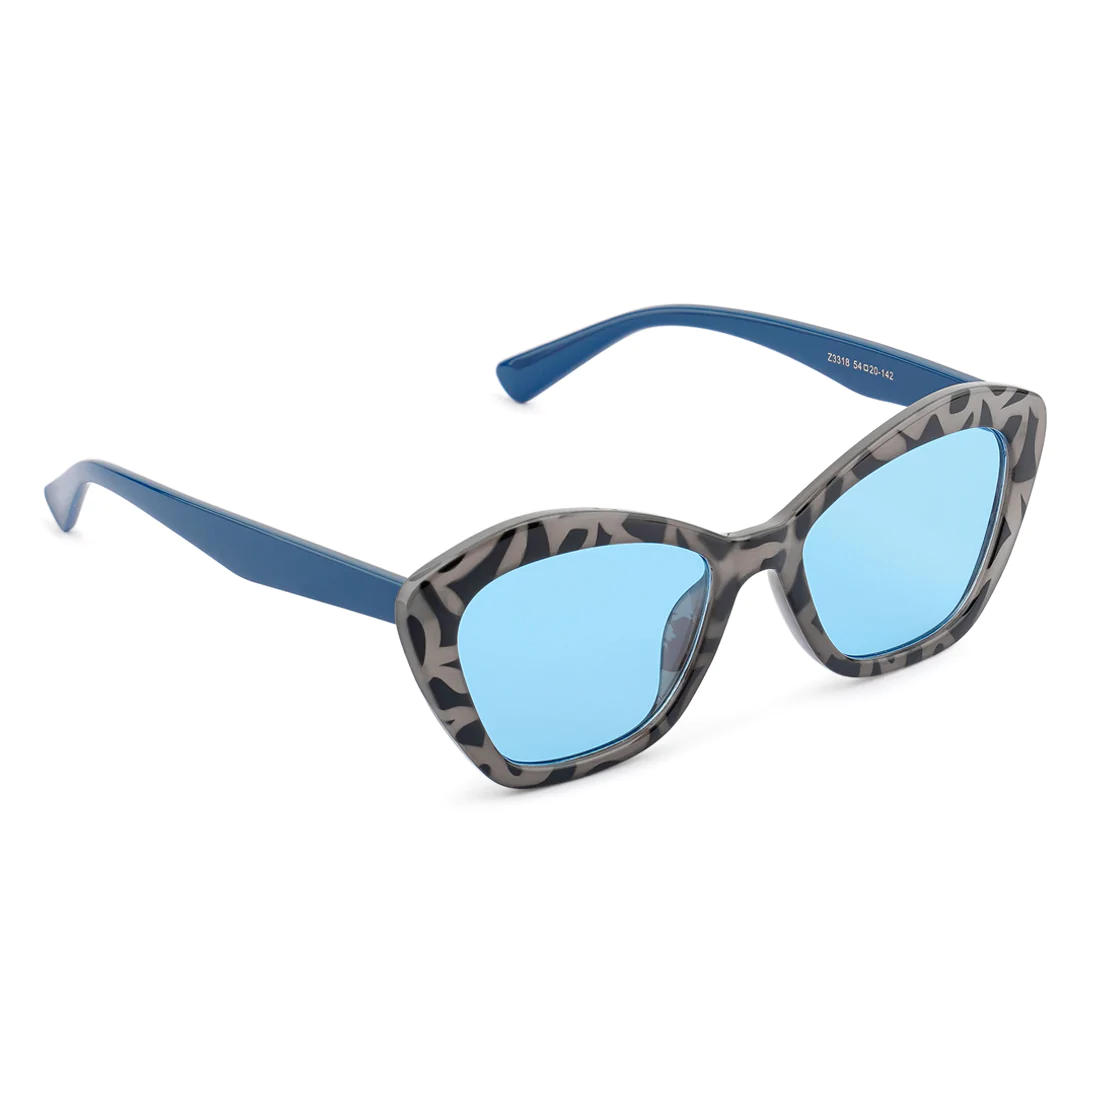 Kacamata kacamata kupu -kupu bingkai dicetak dengan warna biru